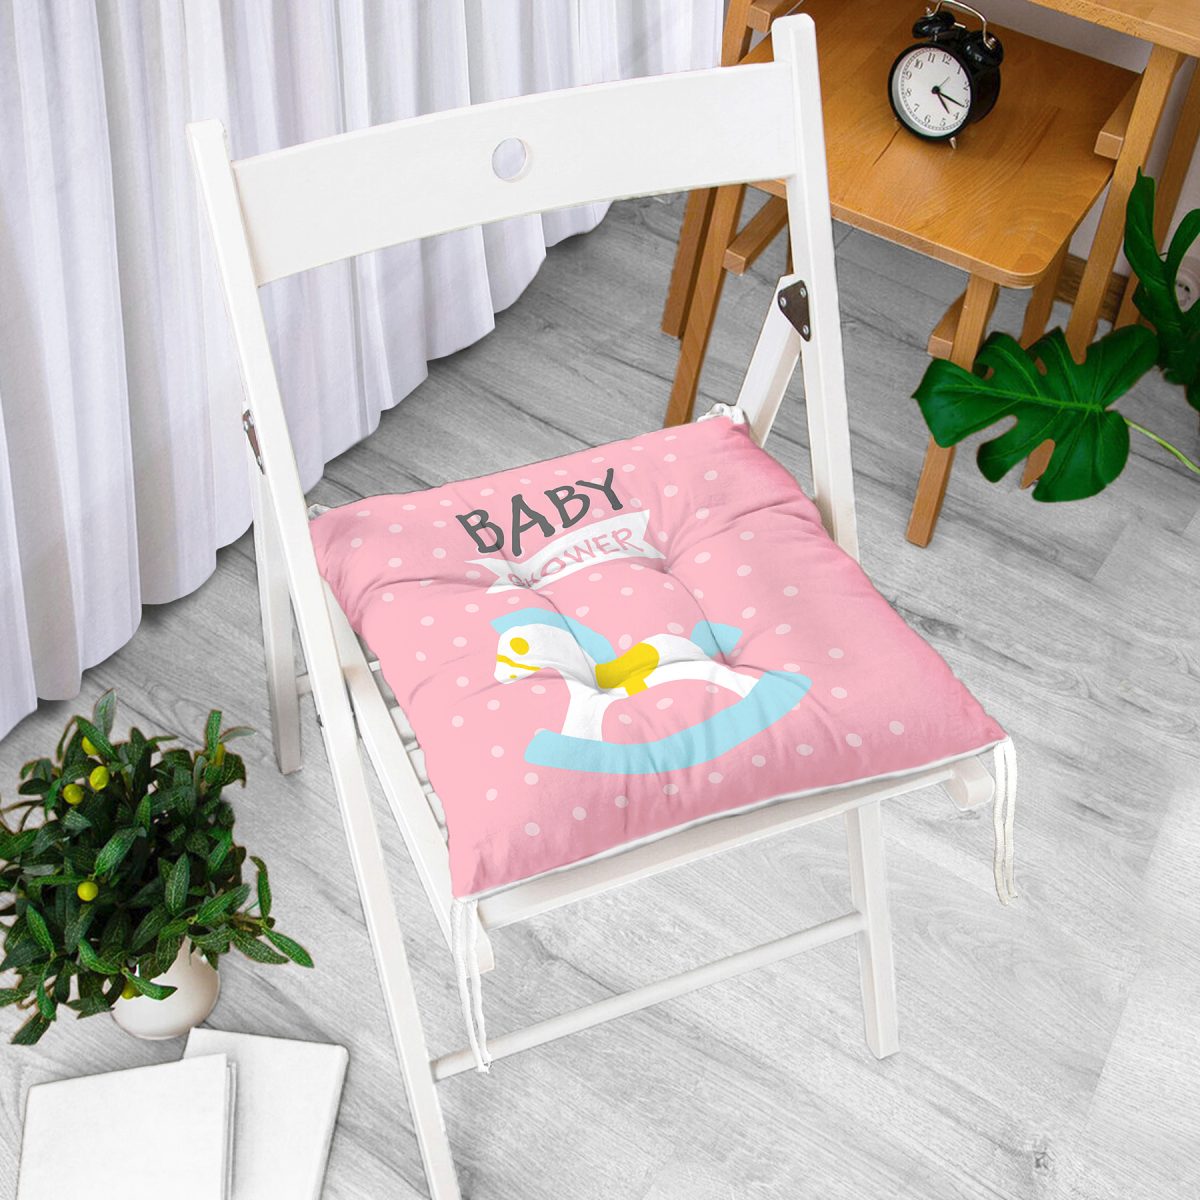 Pembe Zeminde Baby Shower Temalı Desenli Bebek Odası Pofuduk Sandalye Minderi Realhomes